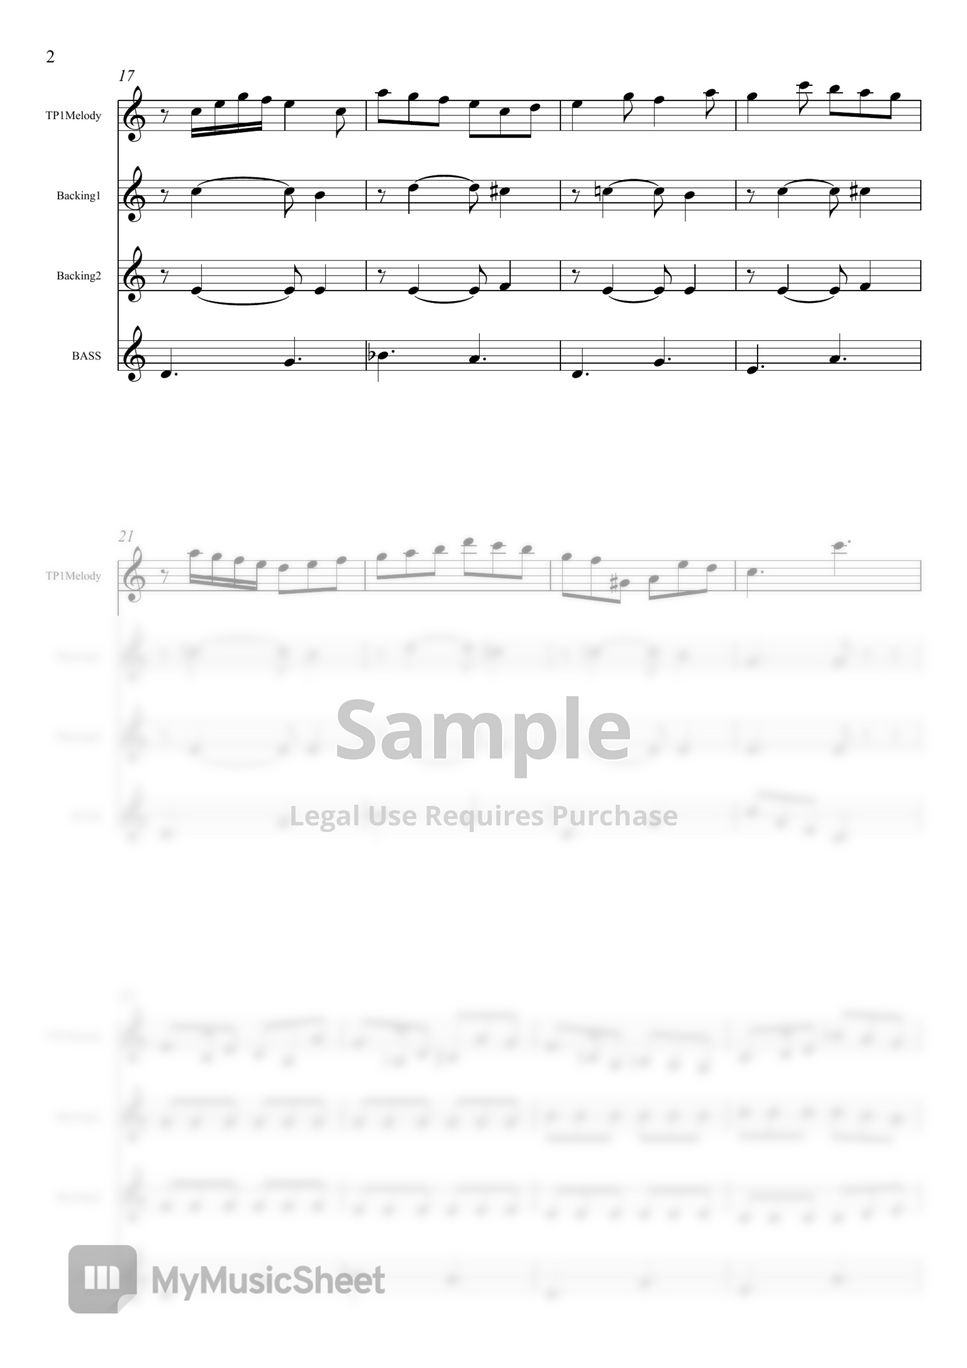 유피미아 앨런 - 젓가락 행진곡 (Bb 트럼펫 앙상블) by 리스펙트럼펫